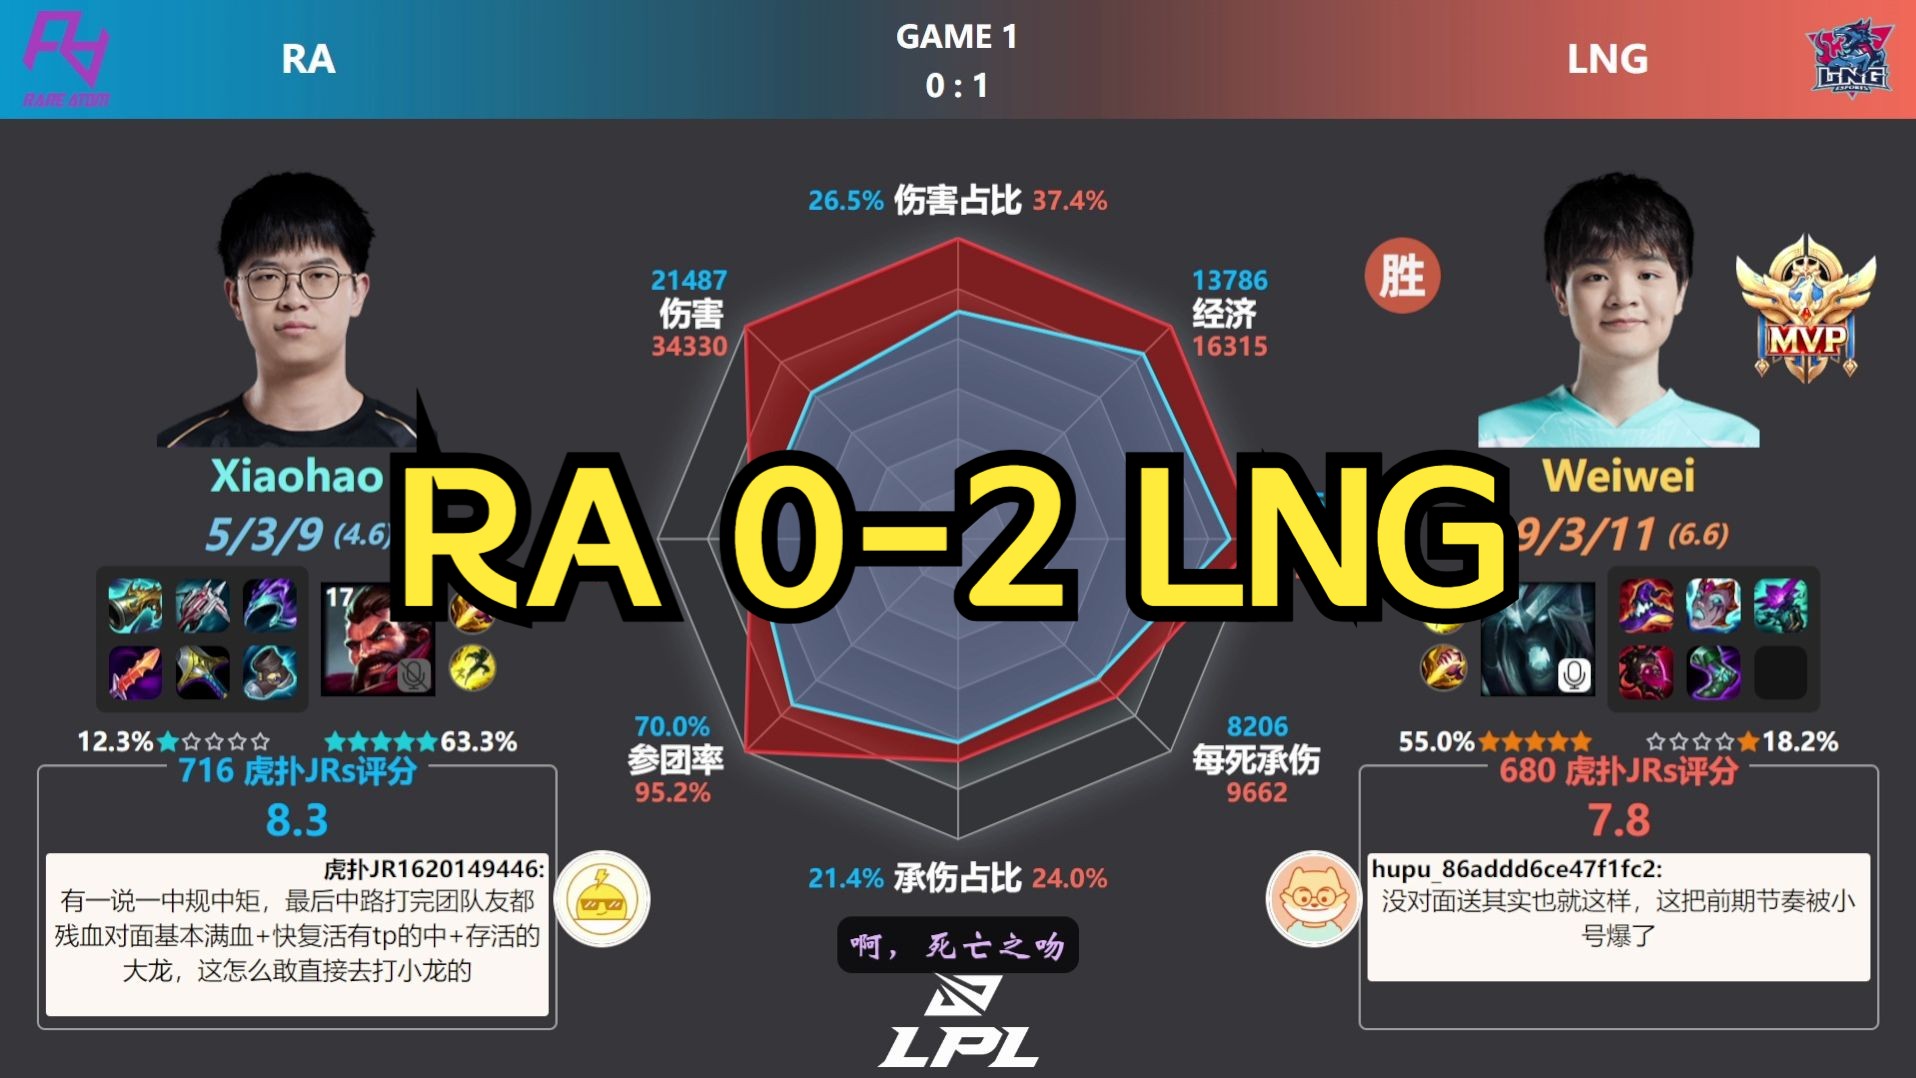 LNG 2-0 RA 虎扑现状+赛后数据雷达图 | LPL夏季赛定组赛